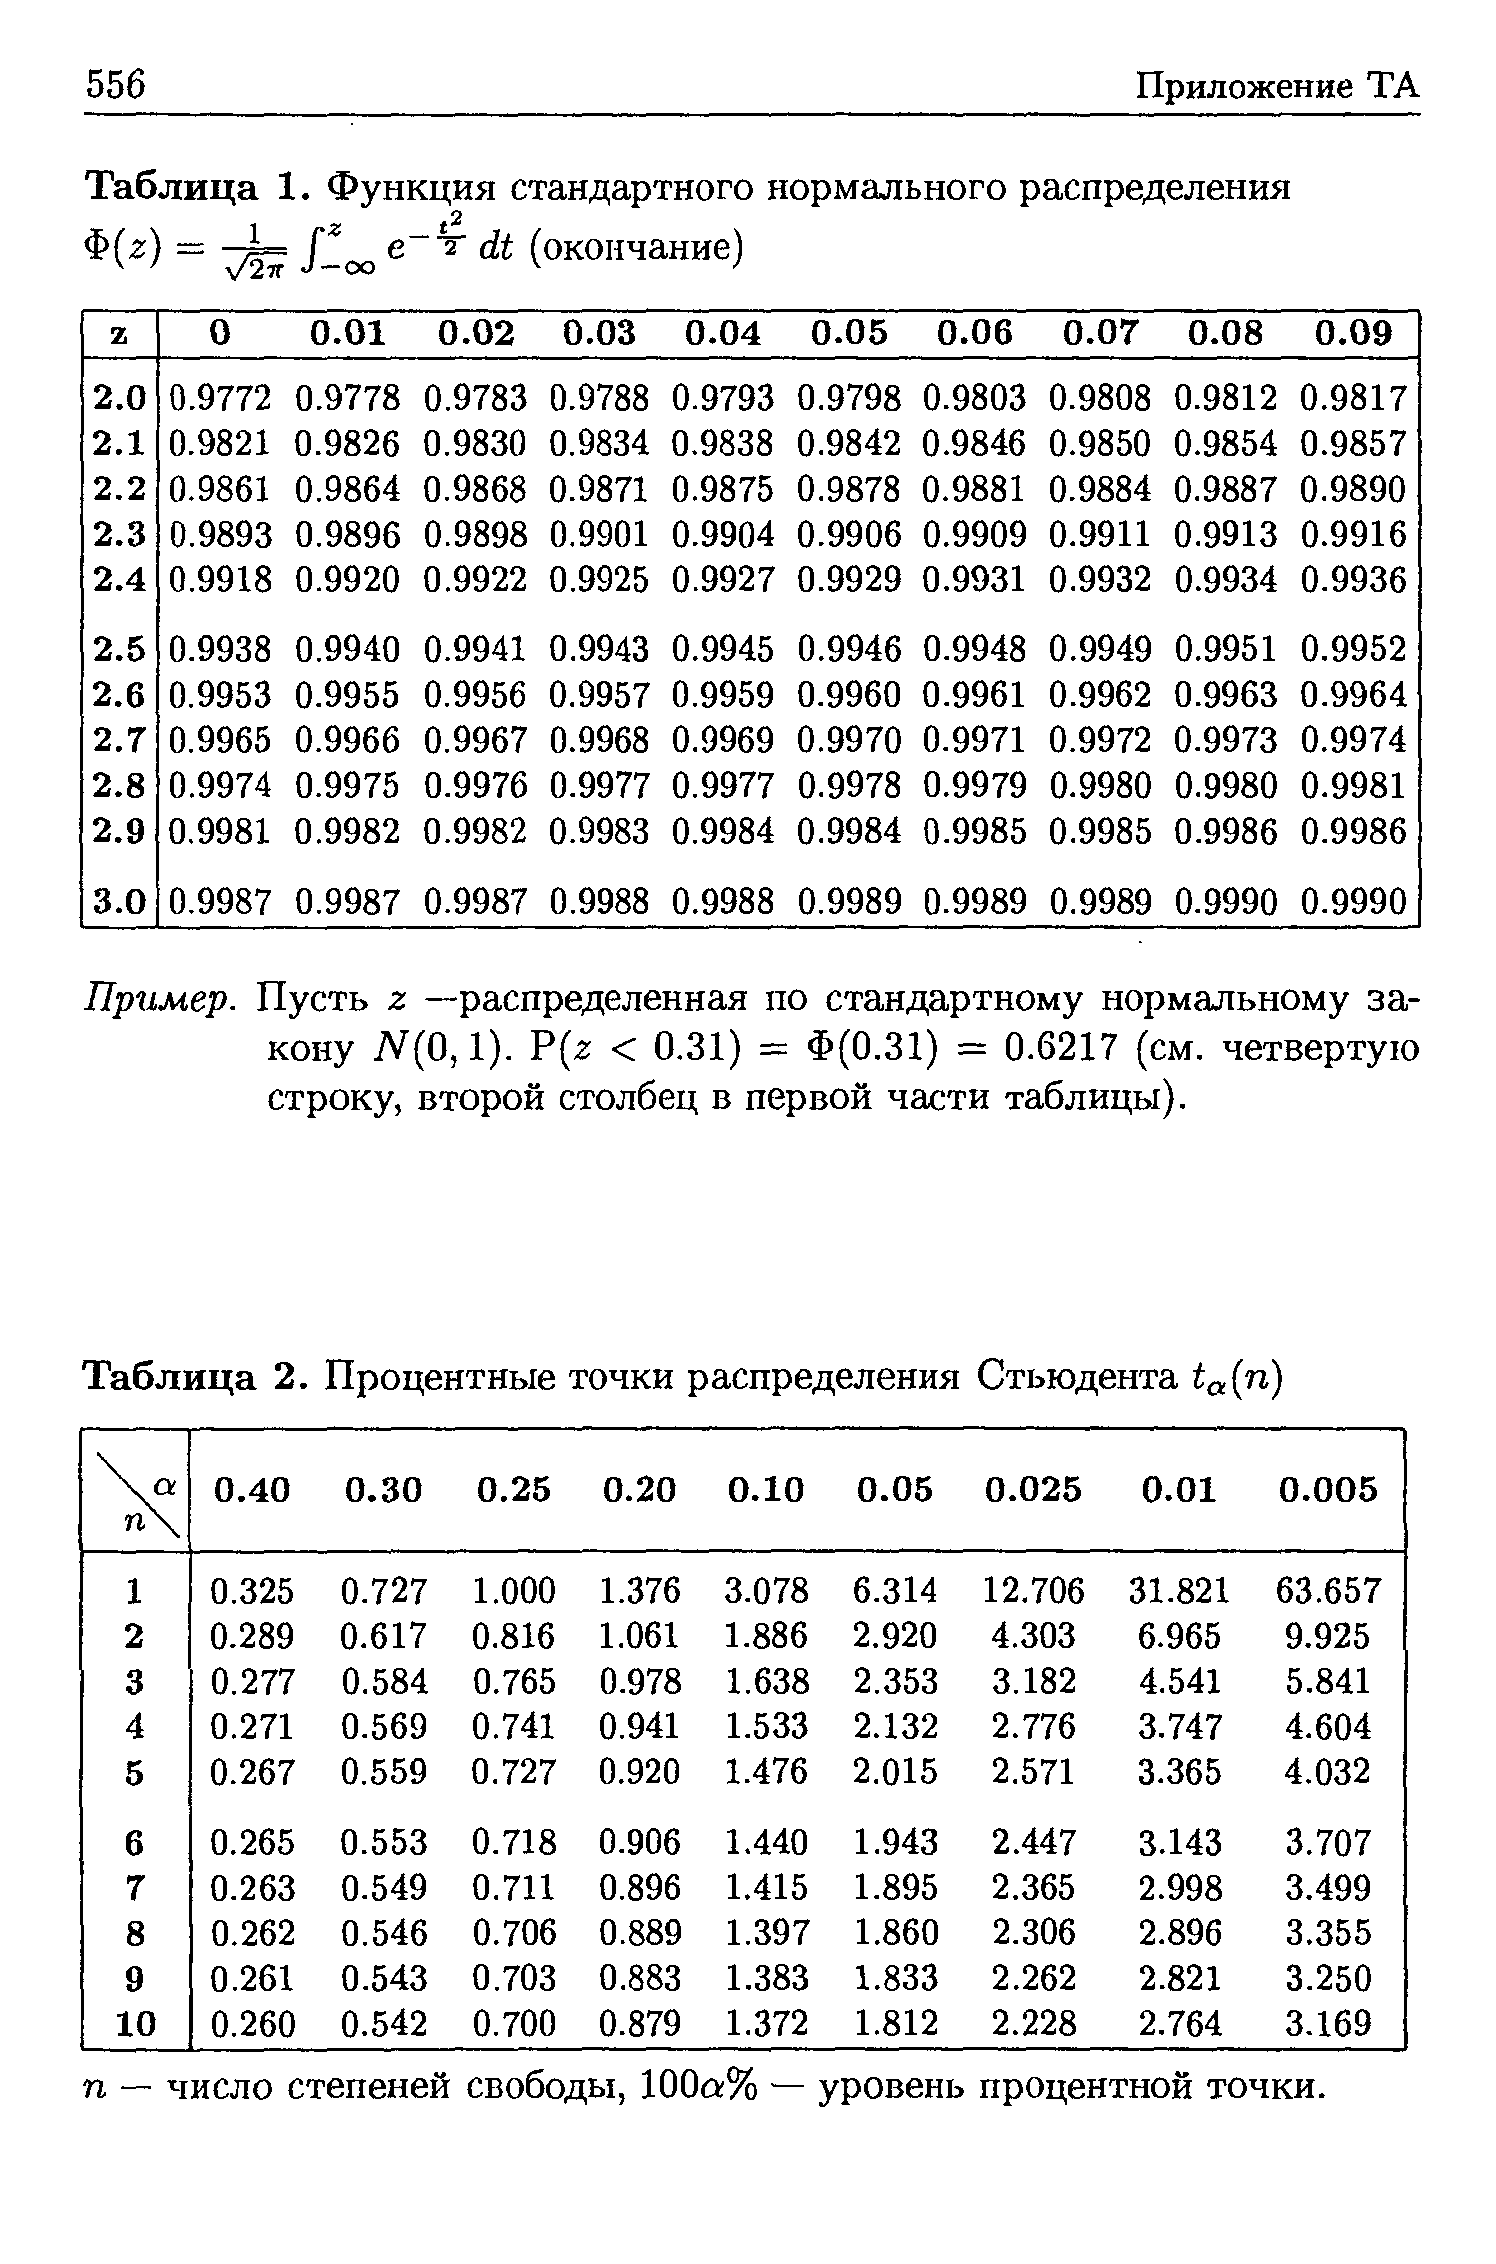 Таблица 2. Процентные точки распределения Стьюдента ta(n)
